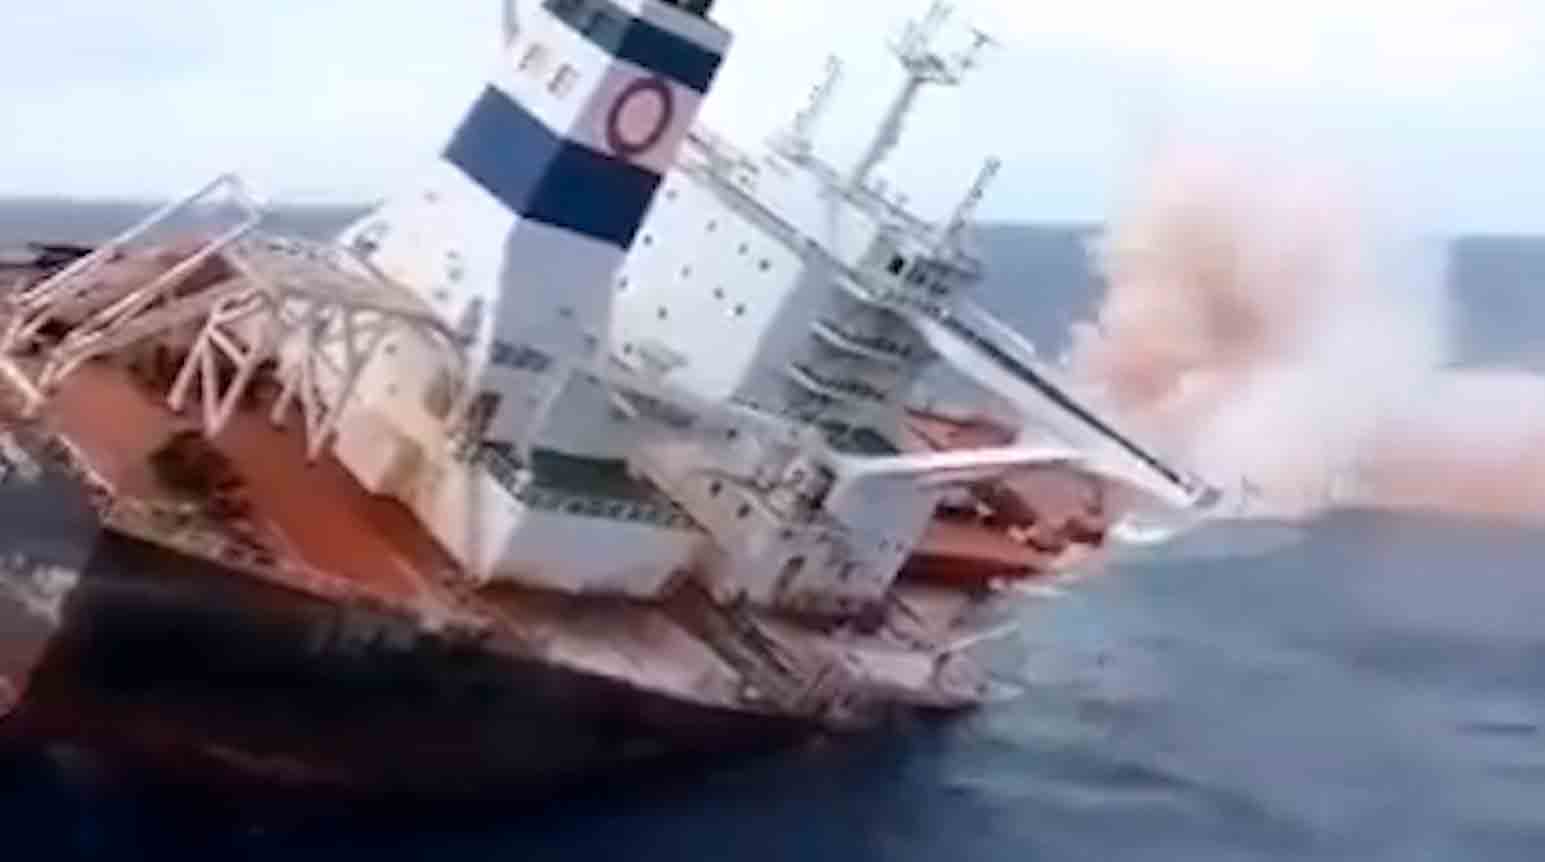 התקפת הות'יס בים האדום משריעה ספינה בריטית ופוגעת ברחפן אמריקאי